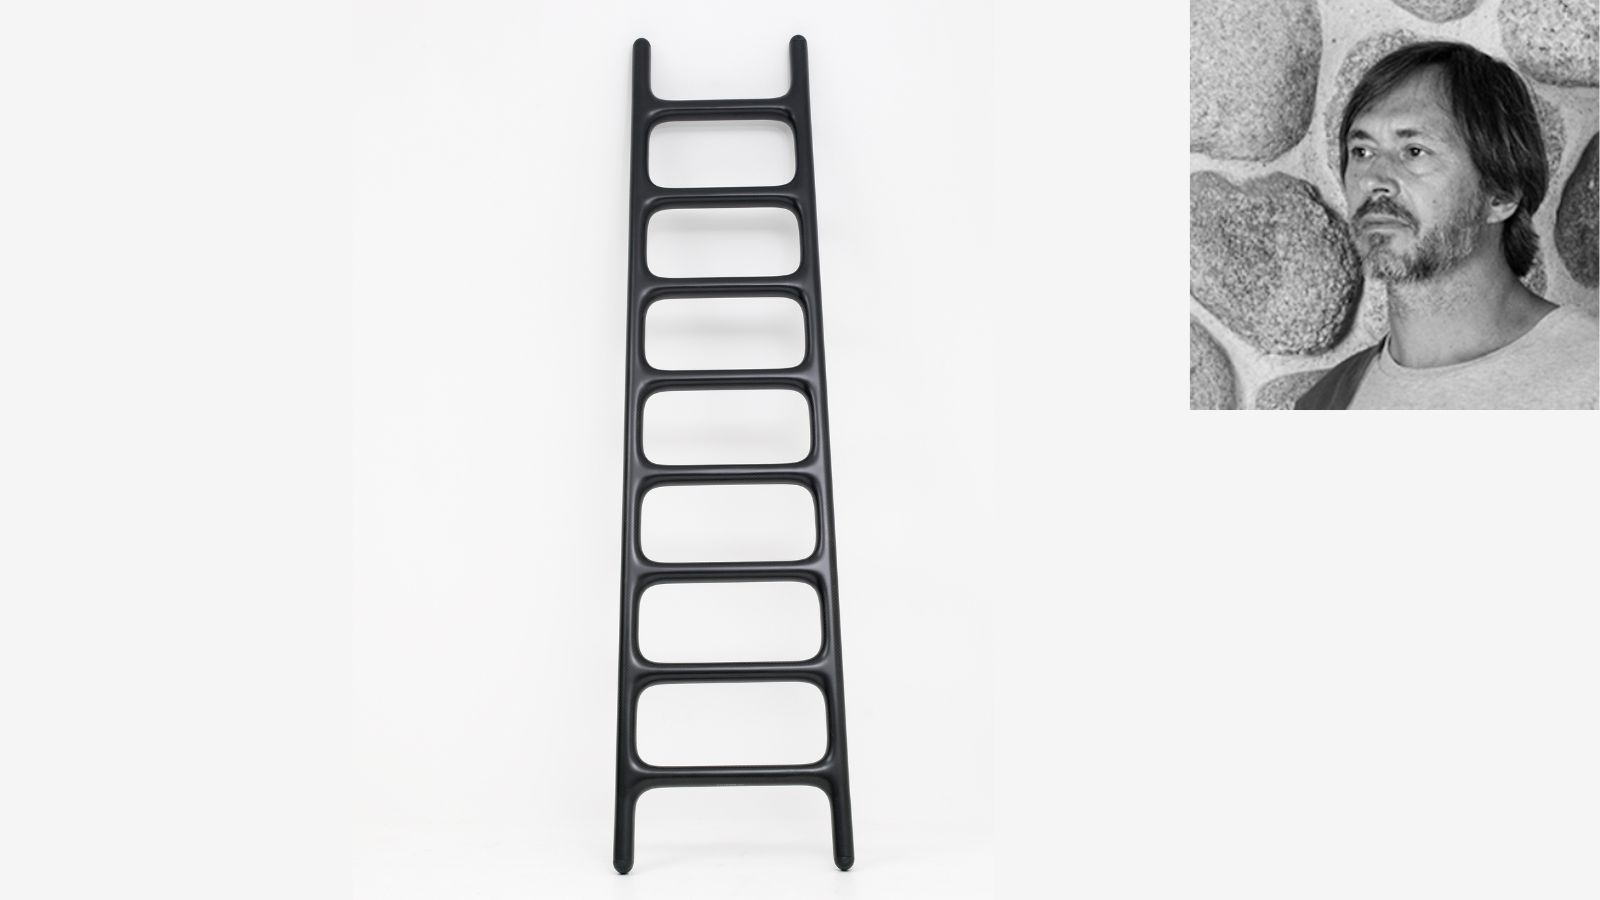 Carbon Ladder de Marc Newson. El creador australiano quiso diseñar una escalera que fuera a la vez estética, muy ligera y fácilmente transportable, a diferencia de la mayoría de modelos existentes hasta entonces en el mercado, muy voluminosos y poco manejables.
La Carbon Ladder está hecha a mano en fibra de carbono, pesa menos de 2,5 kilos y tiene una altura de 2 metros.
Sus bordes redondeados recuerdan a las formas icónicas de los diseños de Marc Newson. Edición limitada a 18 piezas (+3 pruebas de artista). Precio superior a los 50.000 euros. - imagen 3